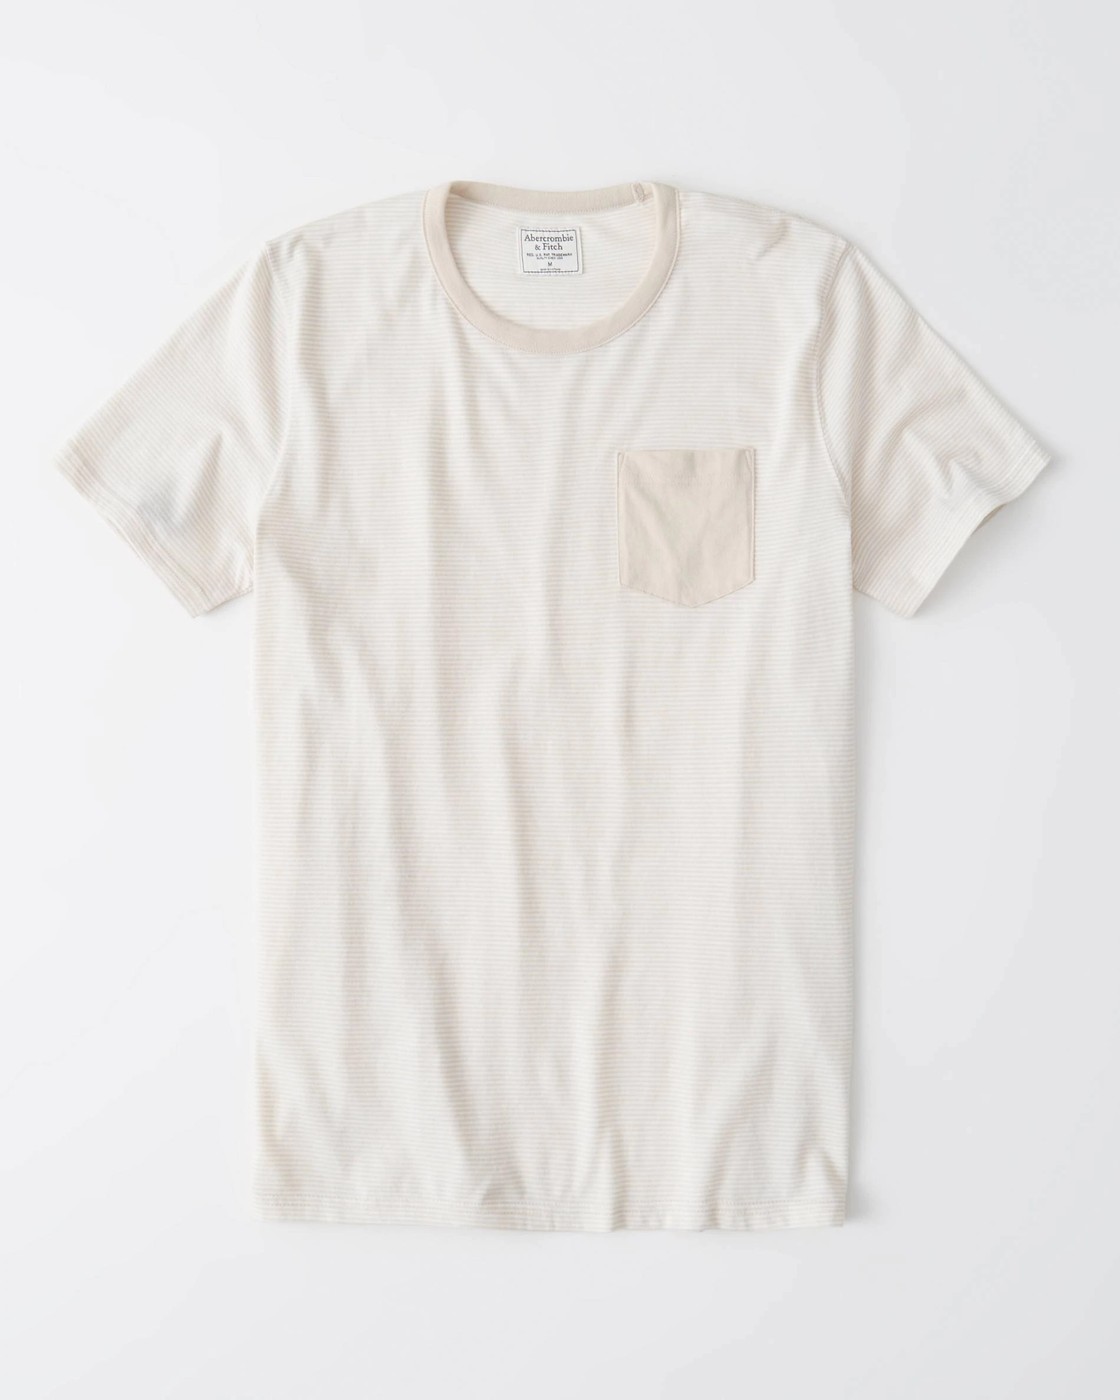 Бежевая футболка - мужская футболка Abercrombie & Fitch